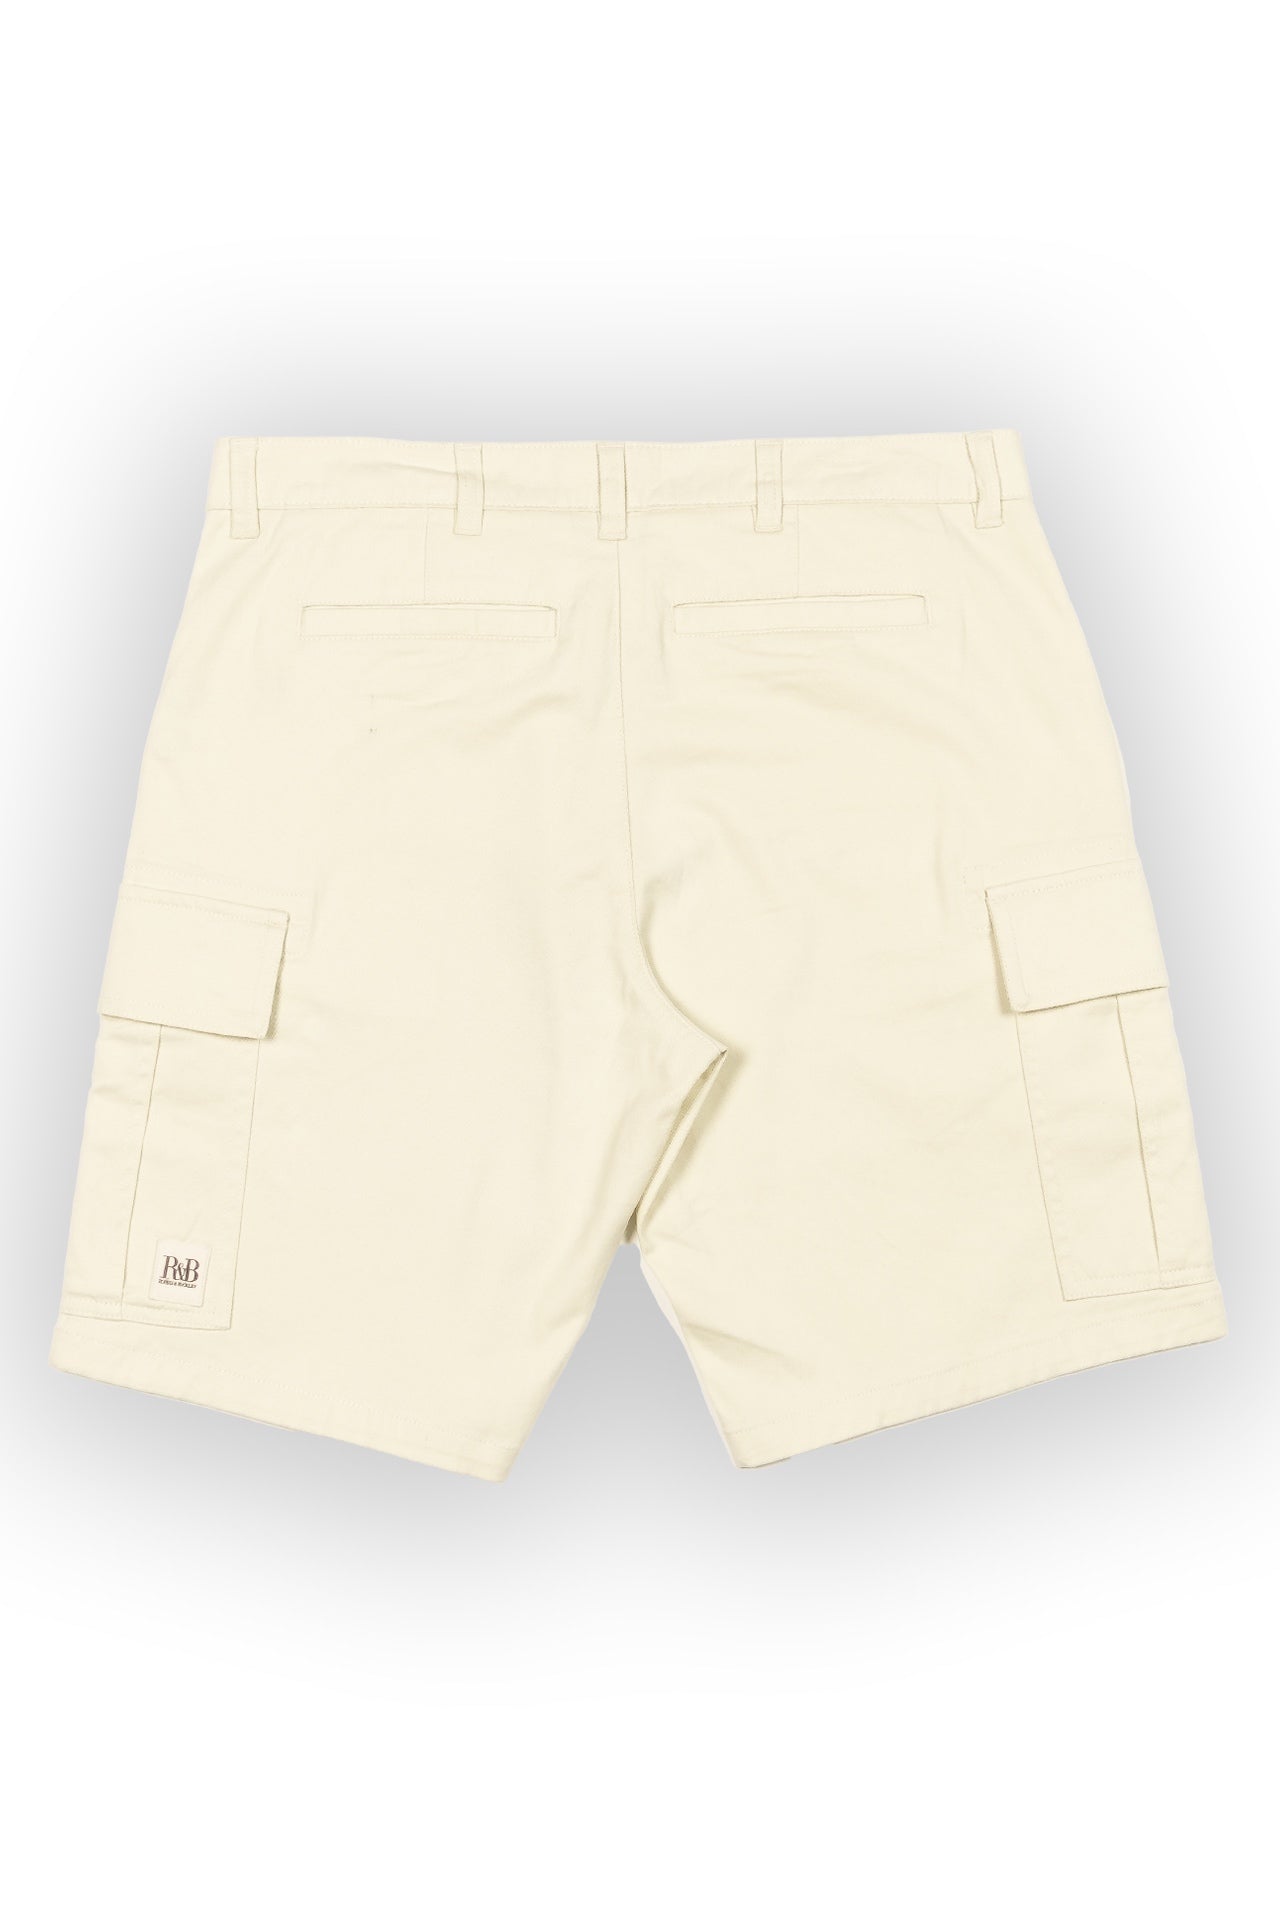 Parker Ecru Cargo Shorts - Rupert and Buckley - Shorts